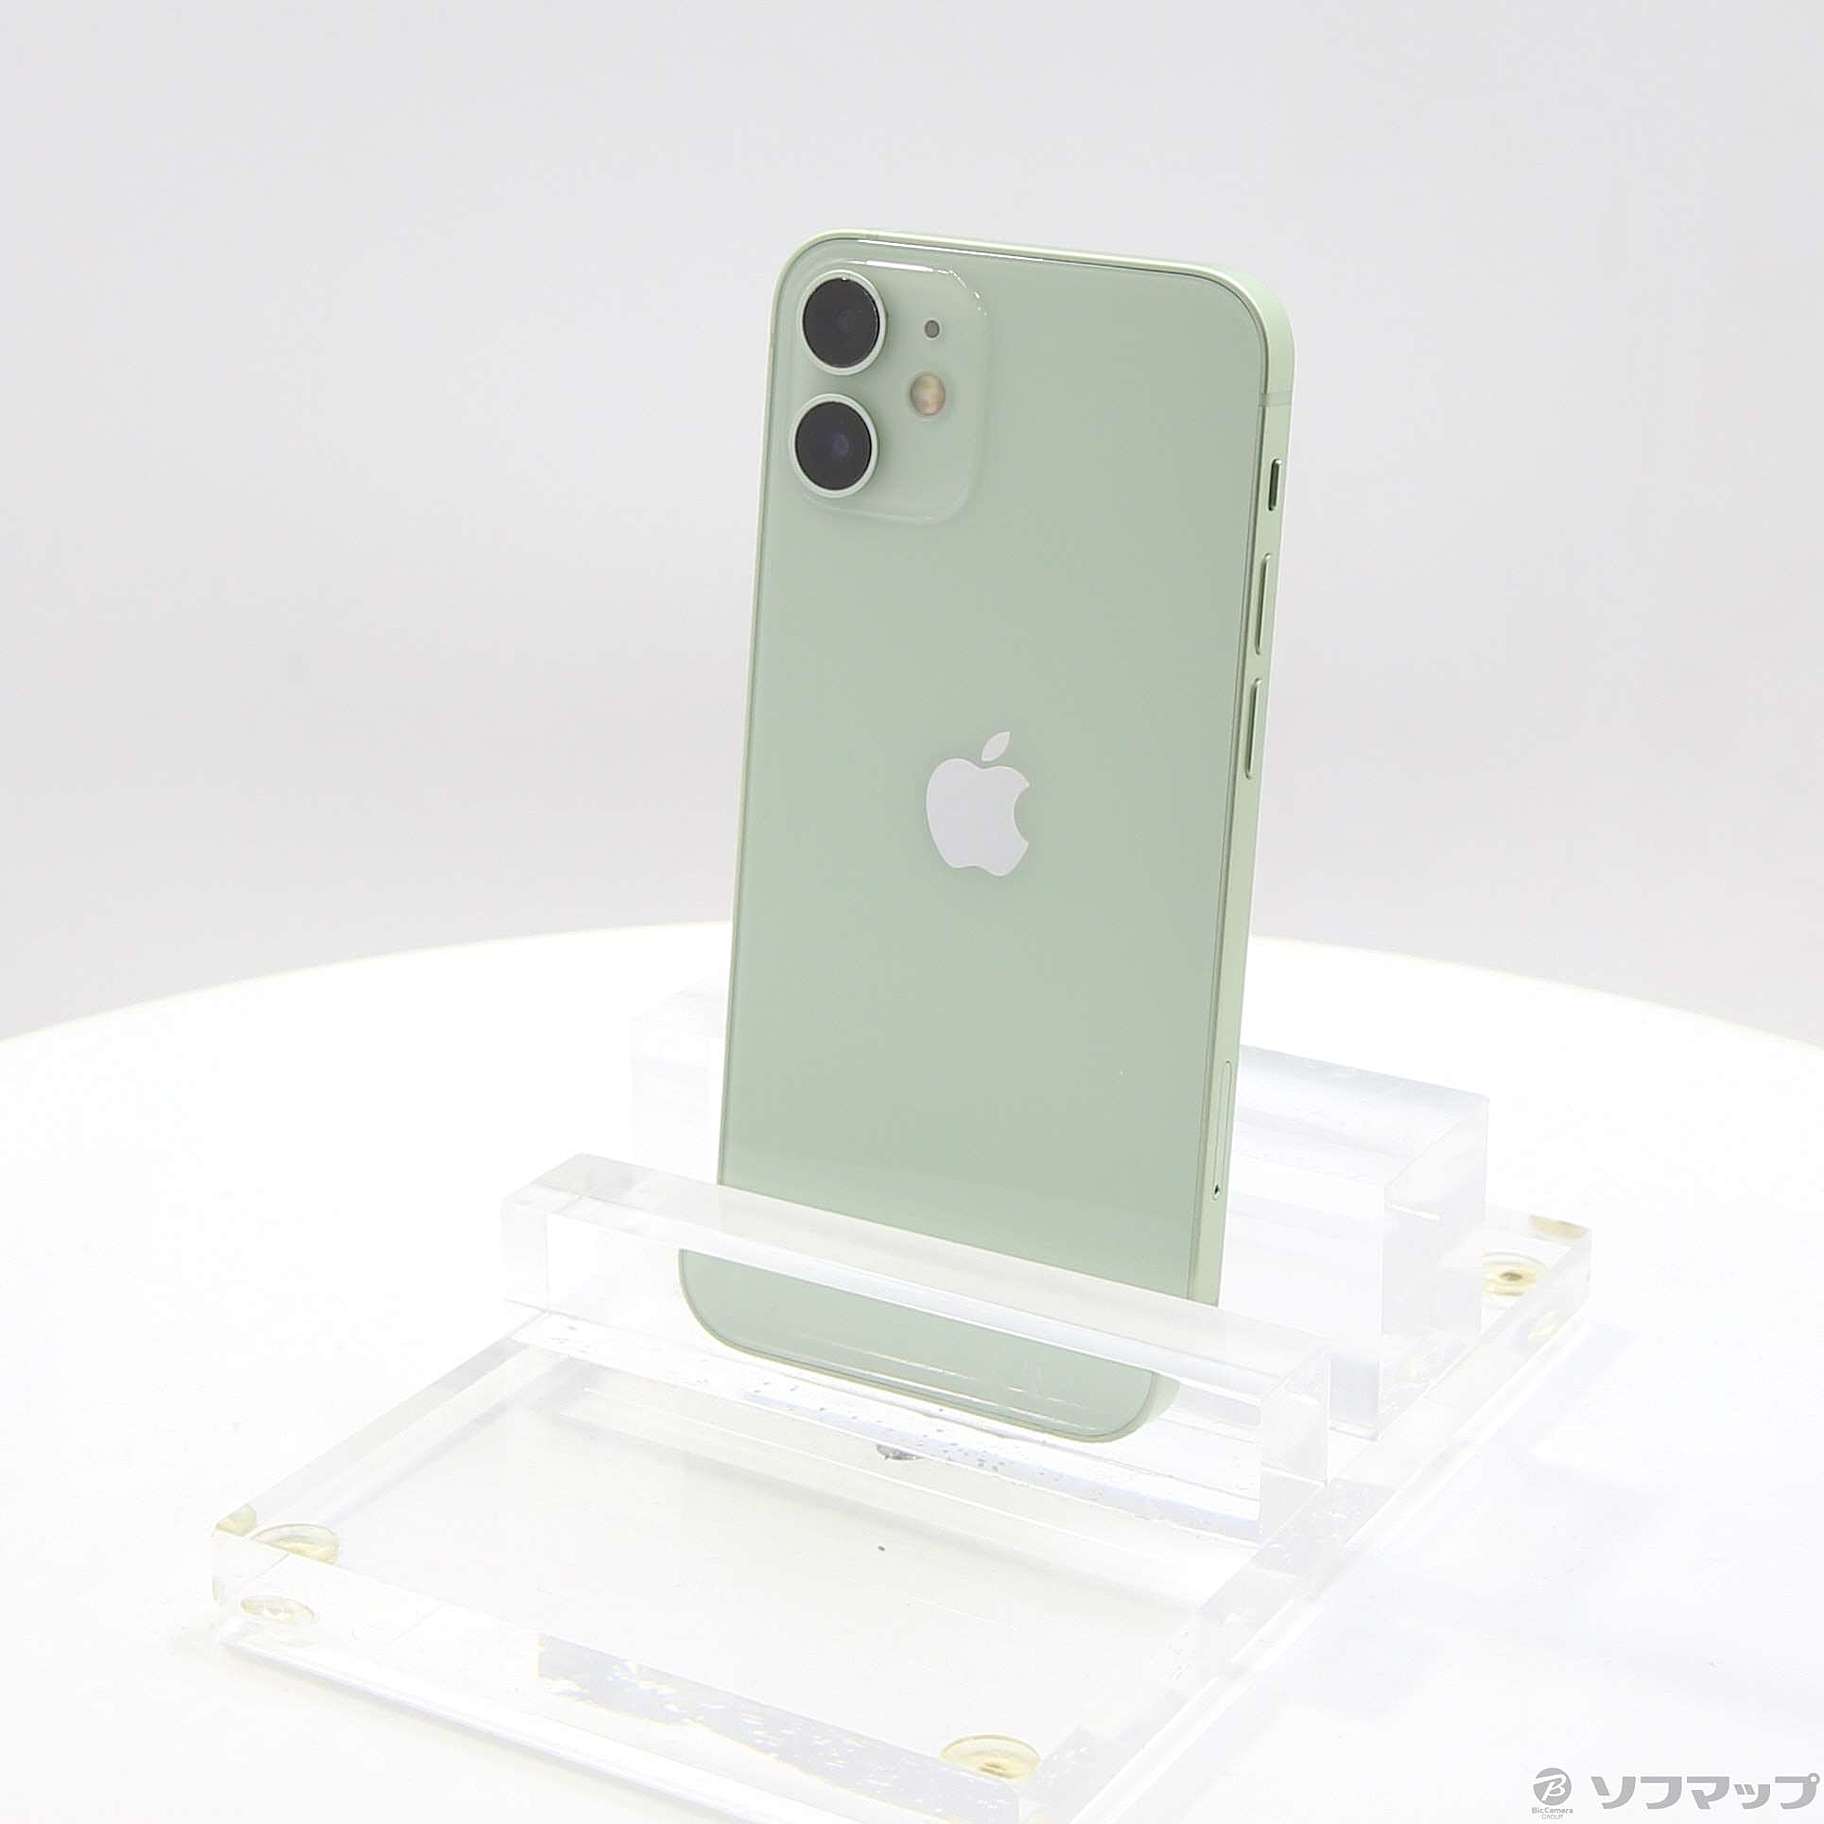 iPhone12 mini グリーン 128gb simフリースマートフォン/携帯電話 